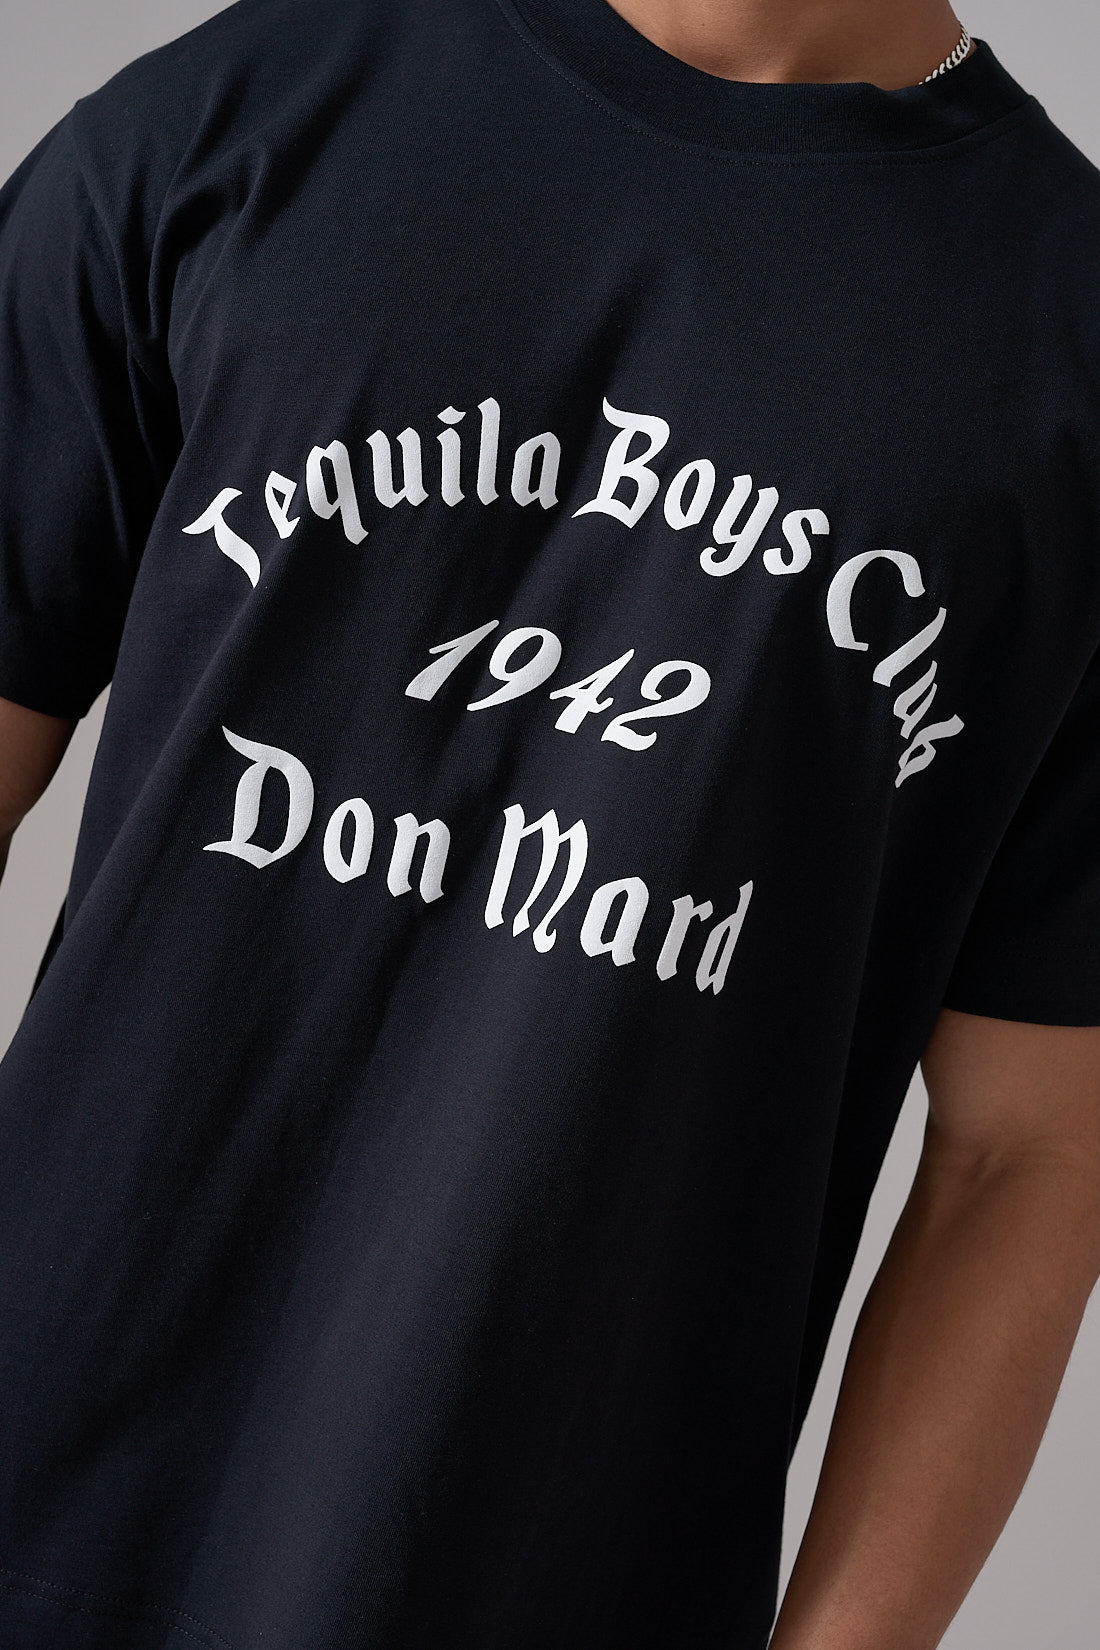 Tequila Boys Club Black T-shirt